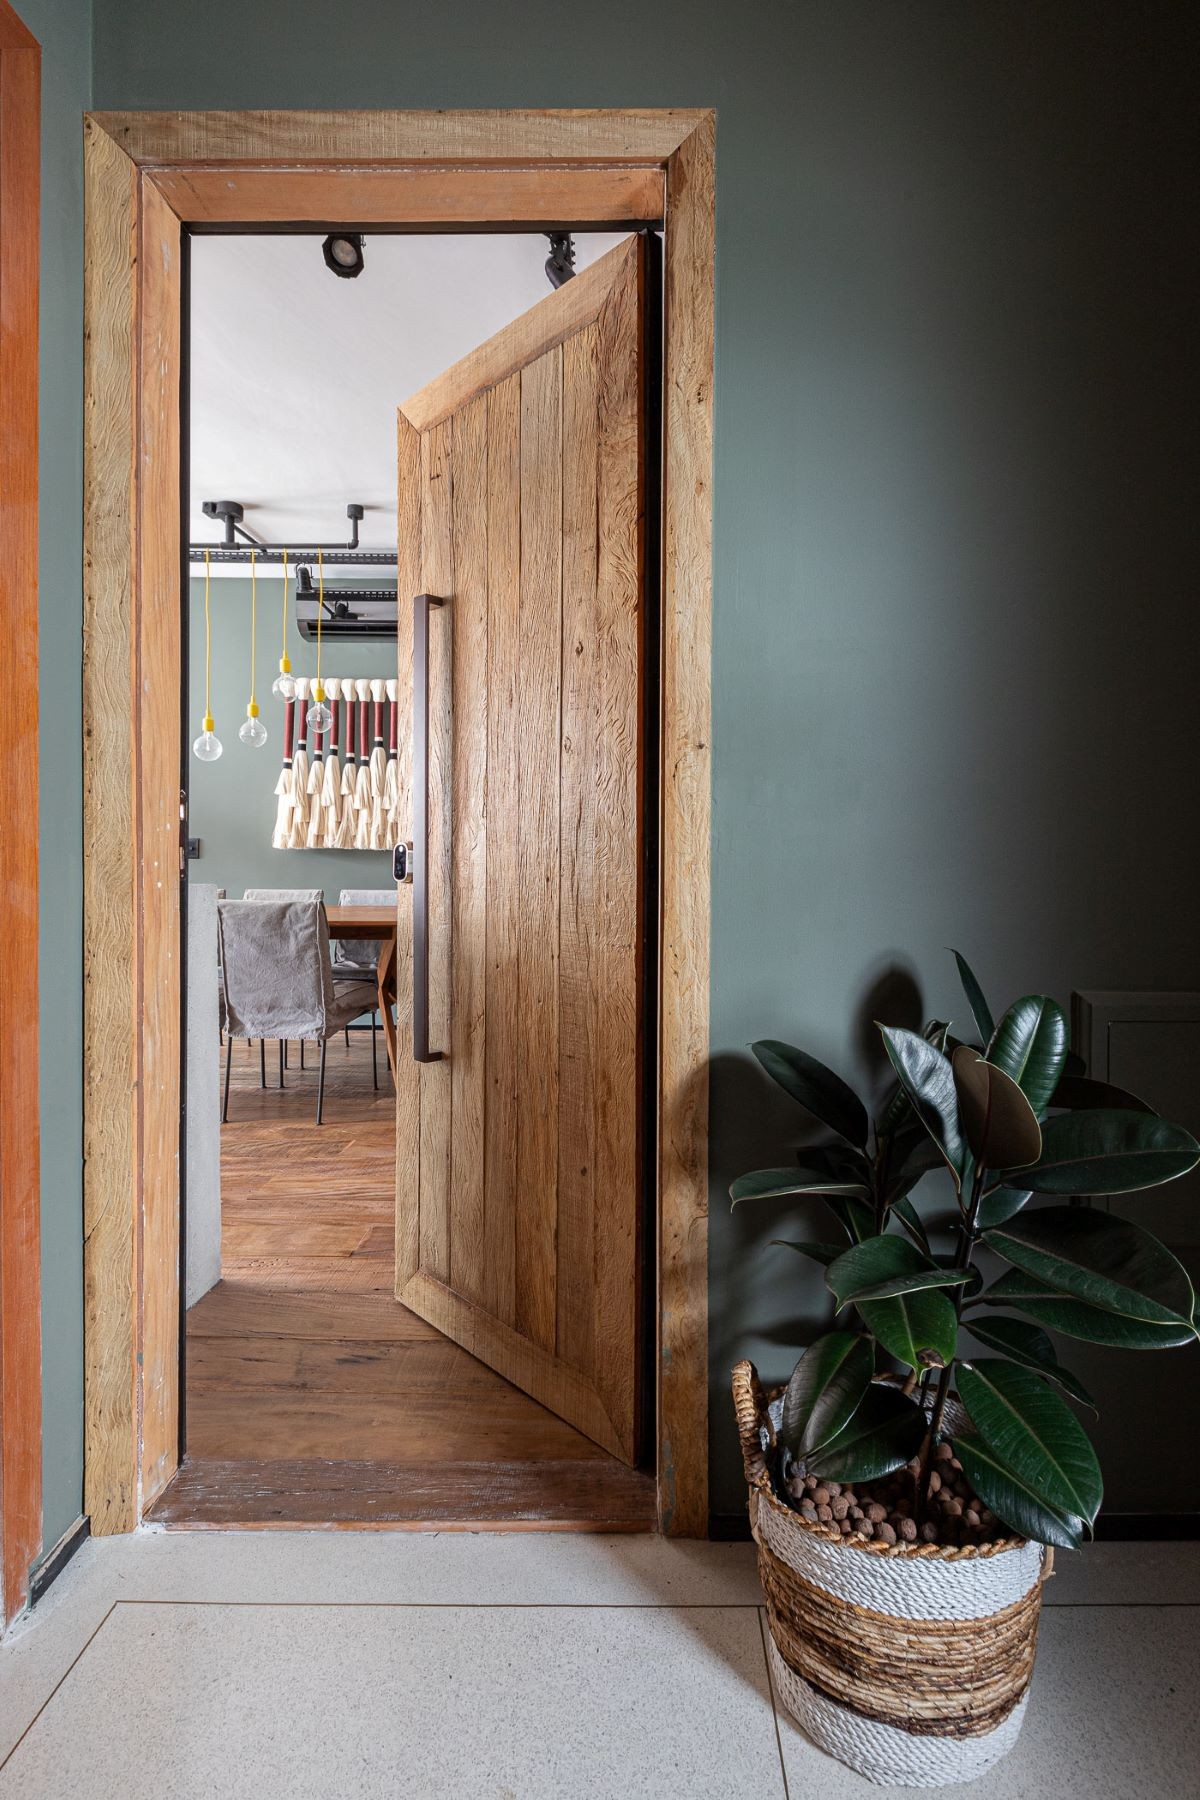 ENTRADA | A porta de madeira e a planta logo na entrada dão o tom do estilo (Foto: Gisele Rampazzo / Divulgação)